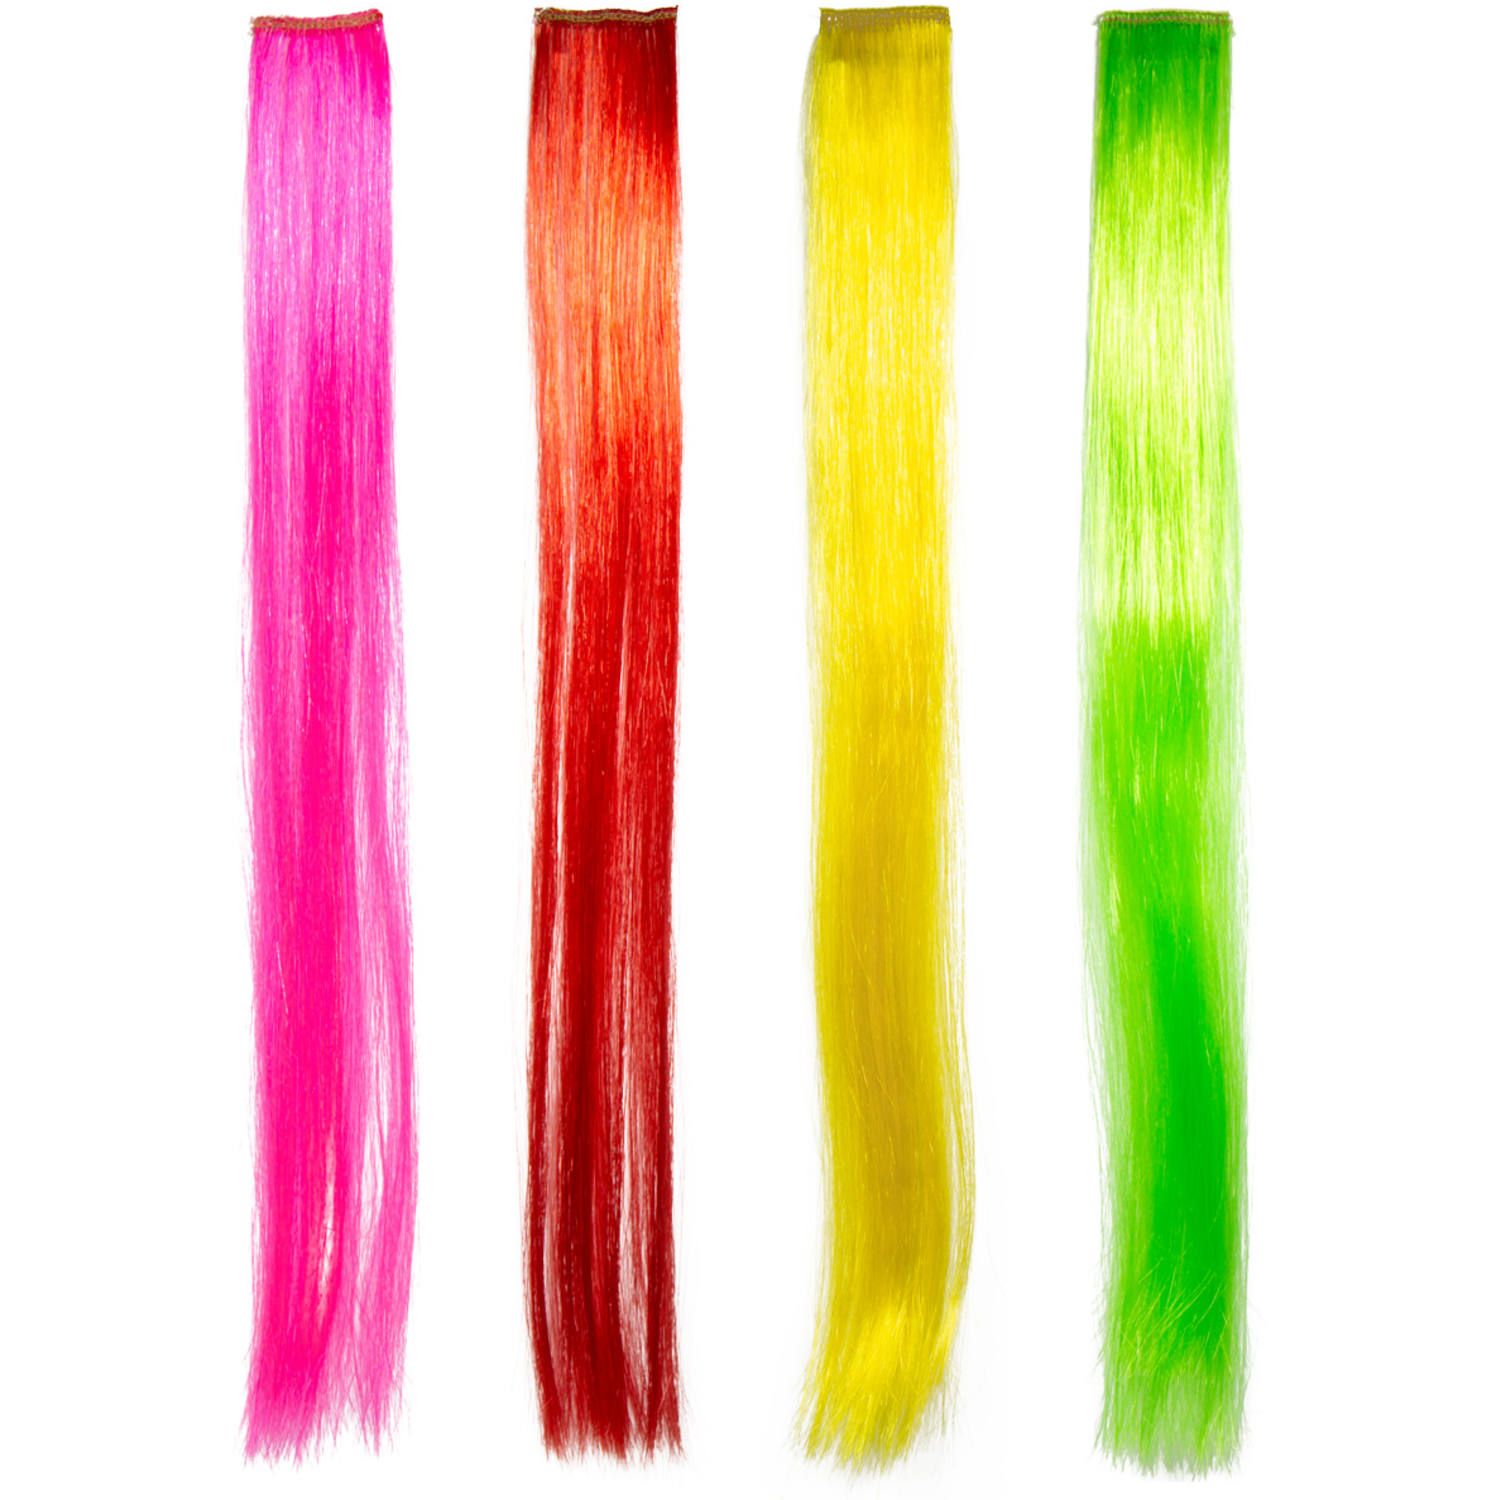 Hair extensions 4 stuks neon kleur